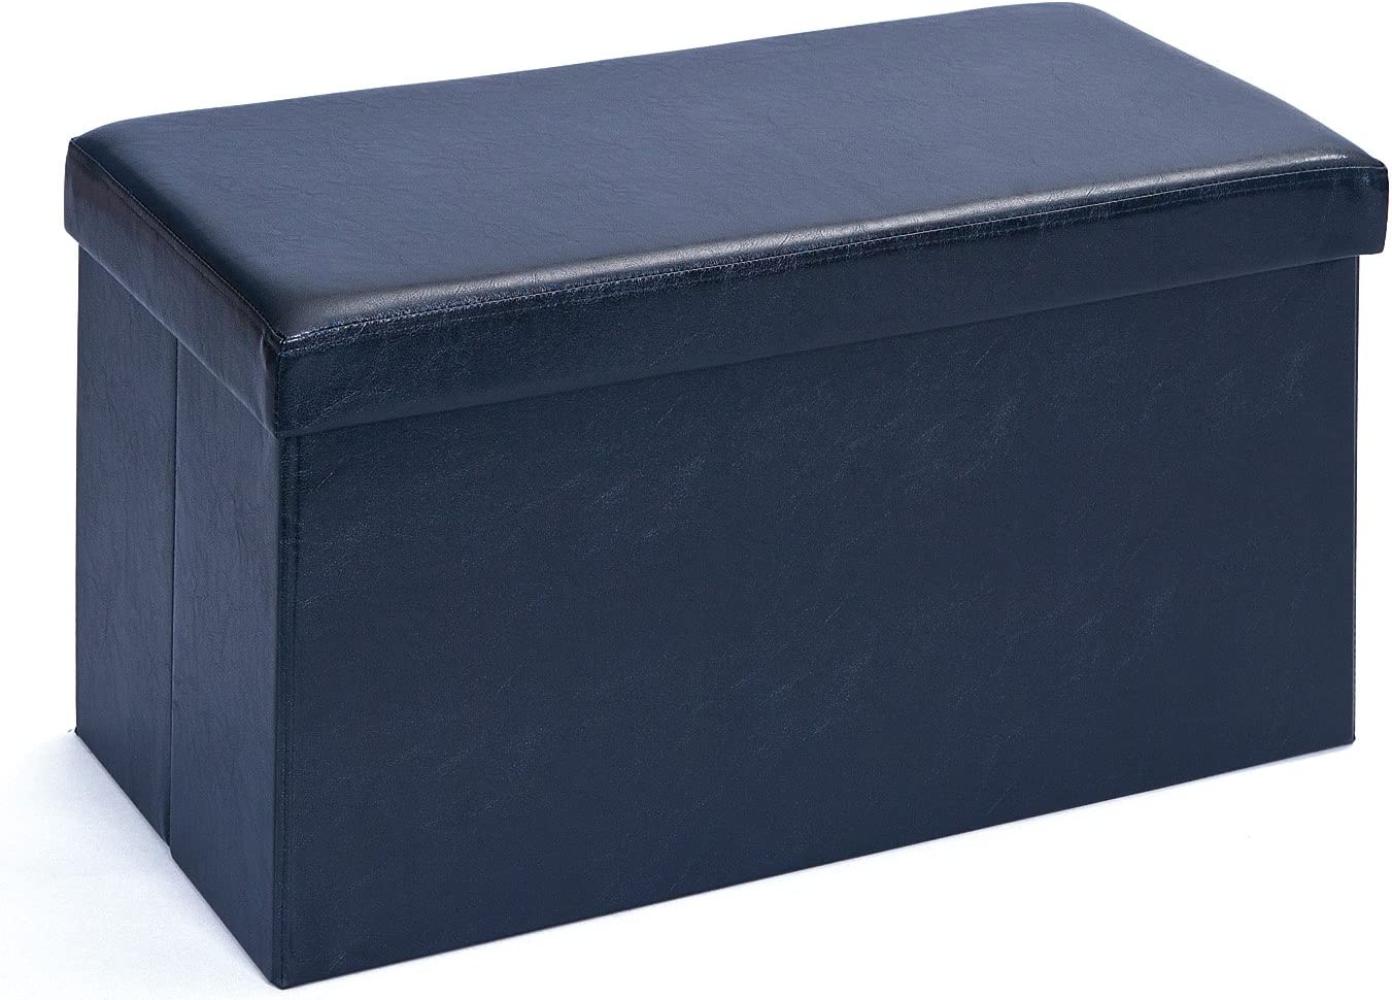 Inter Link Faltbox Setto groß Schwarz mit Sitzpolster, 76x38x38 cm Bild 1